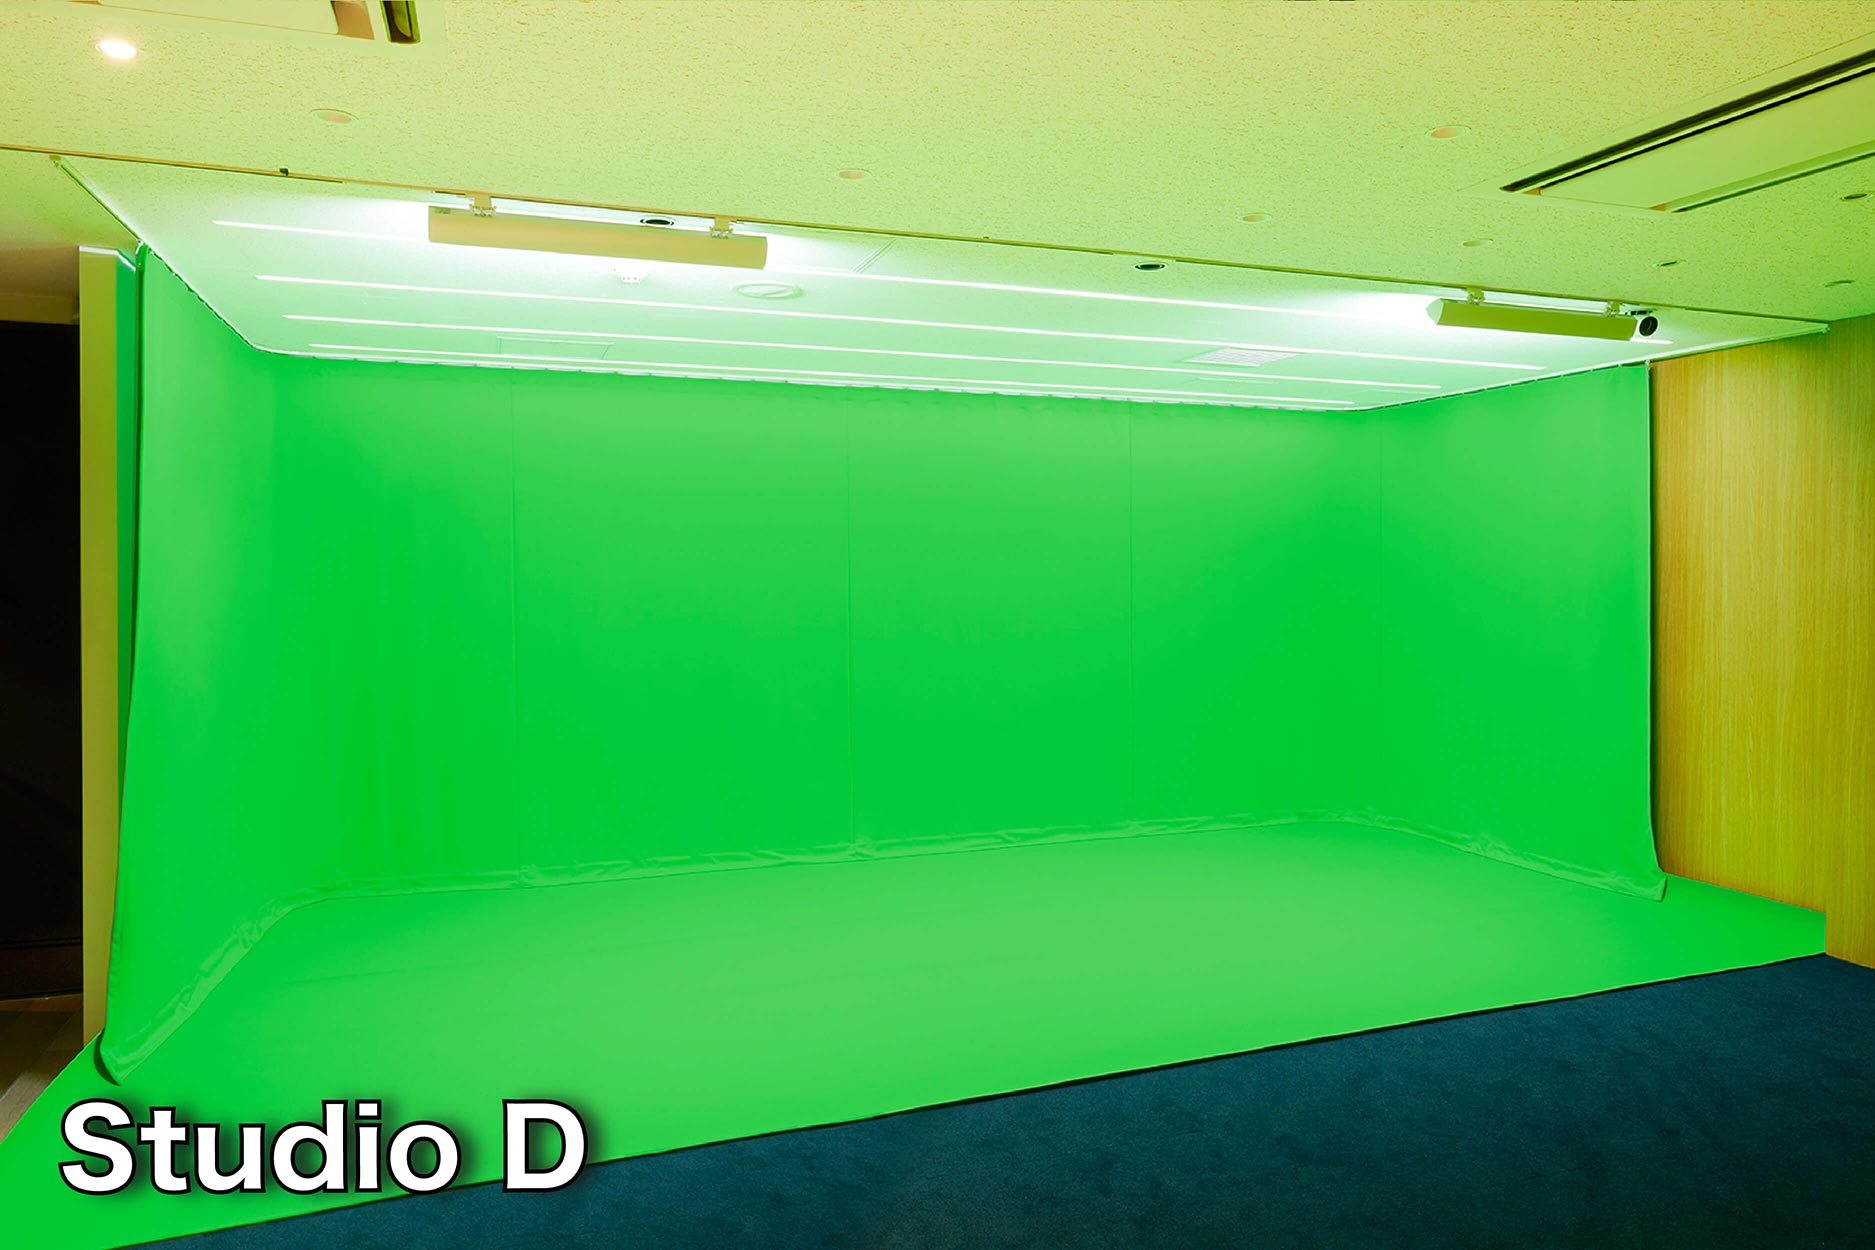 StudioDの画像 - グリーンバックとグリーンマットを設置する事で最大4面でのクロマキー合成撮影が可能です。